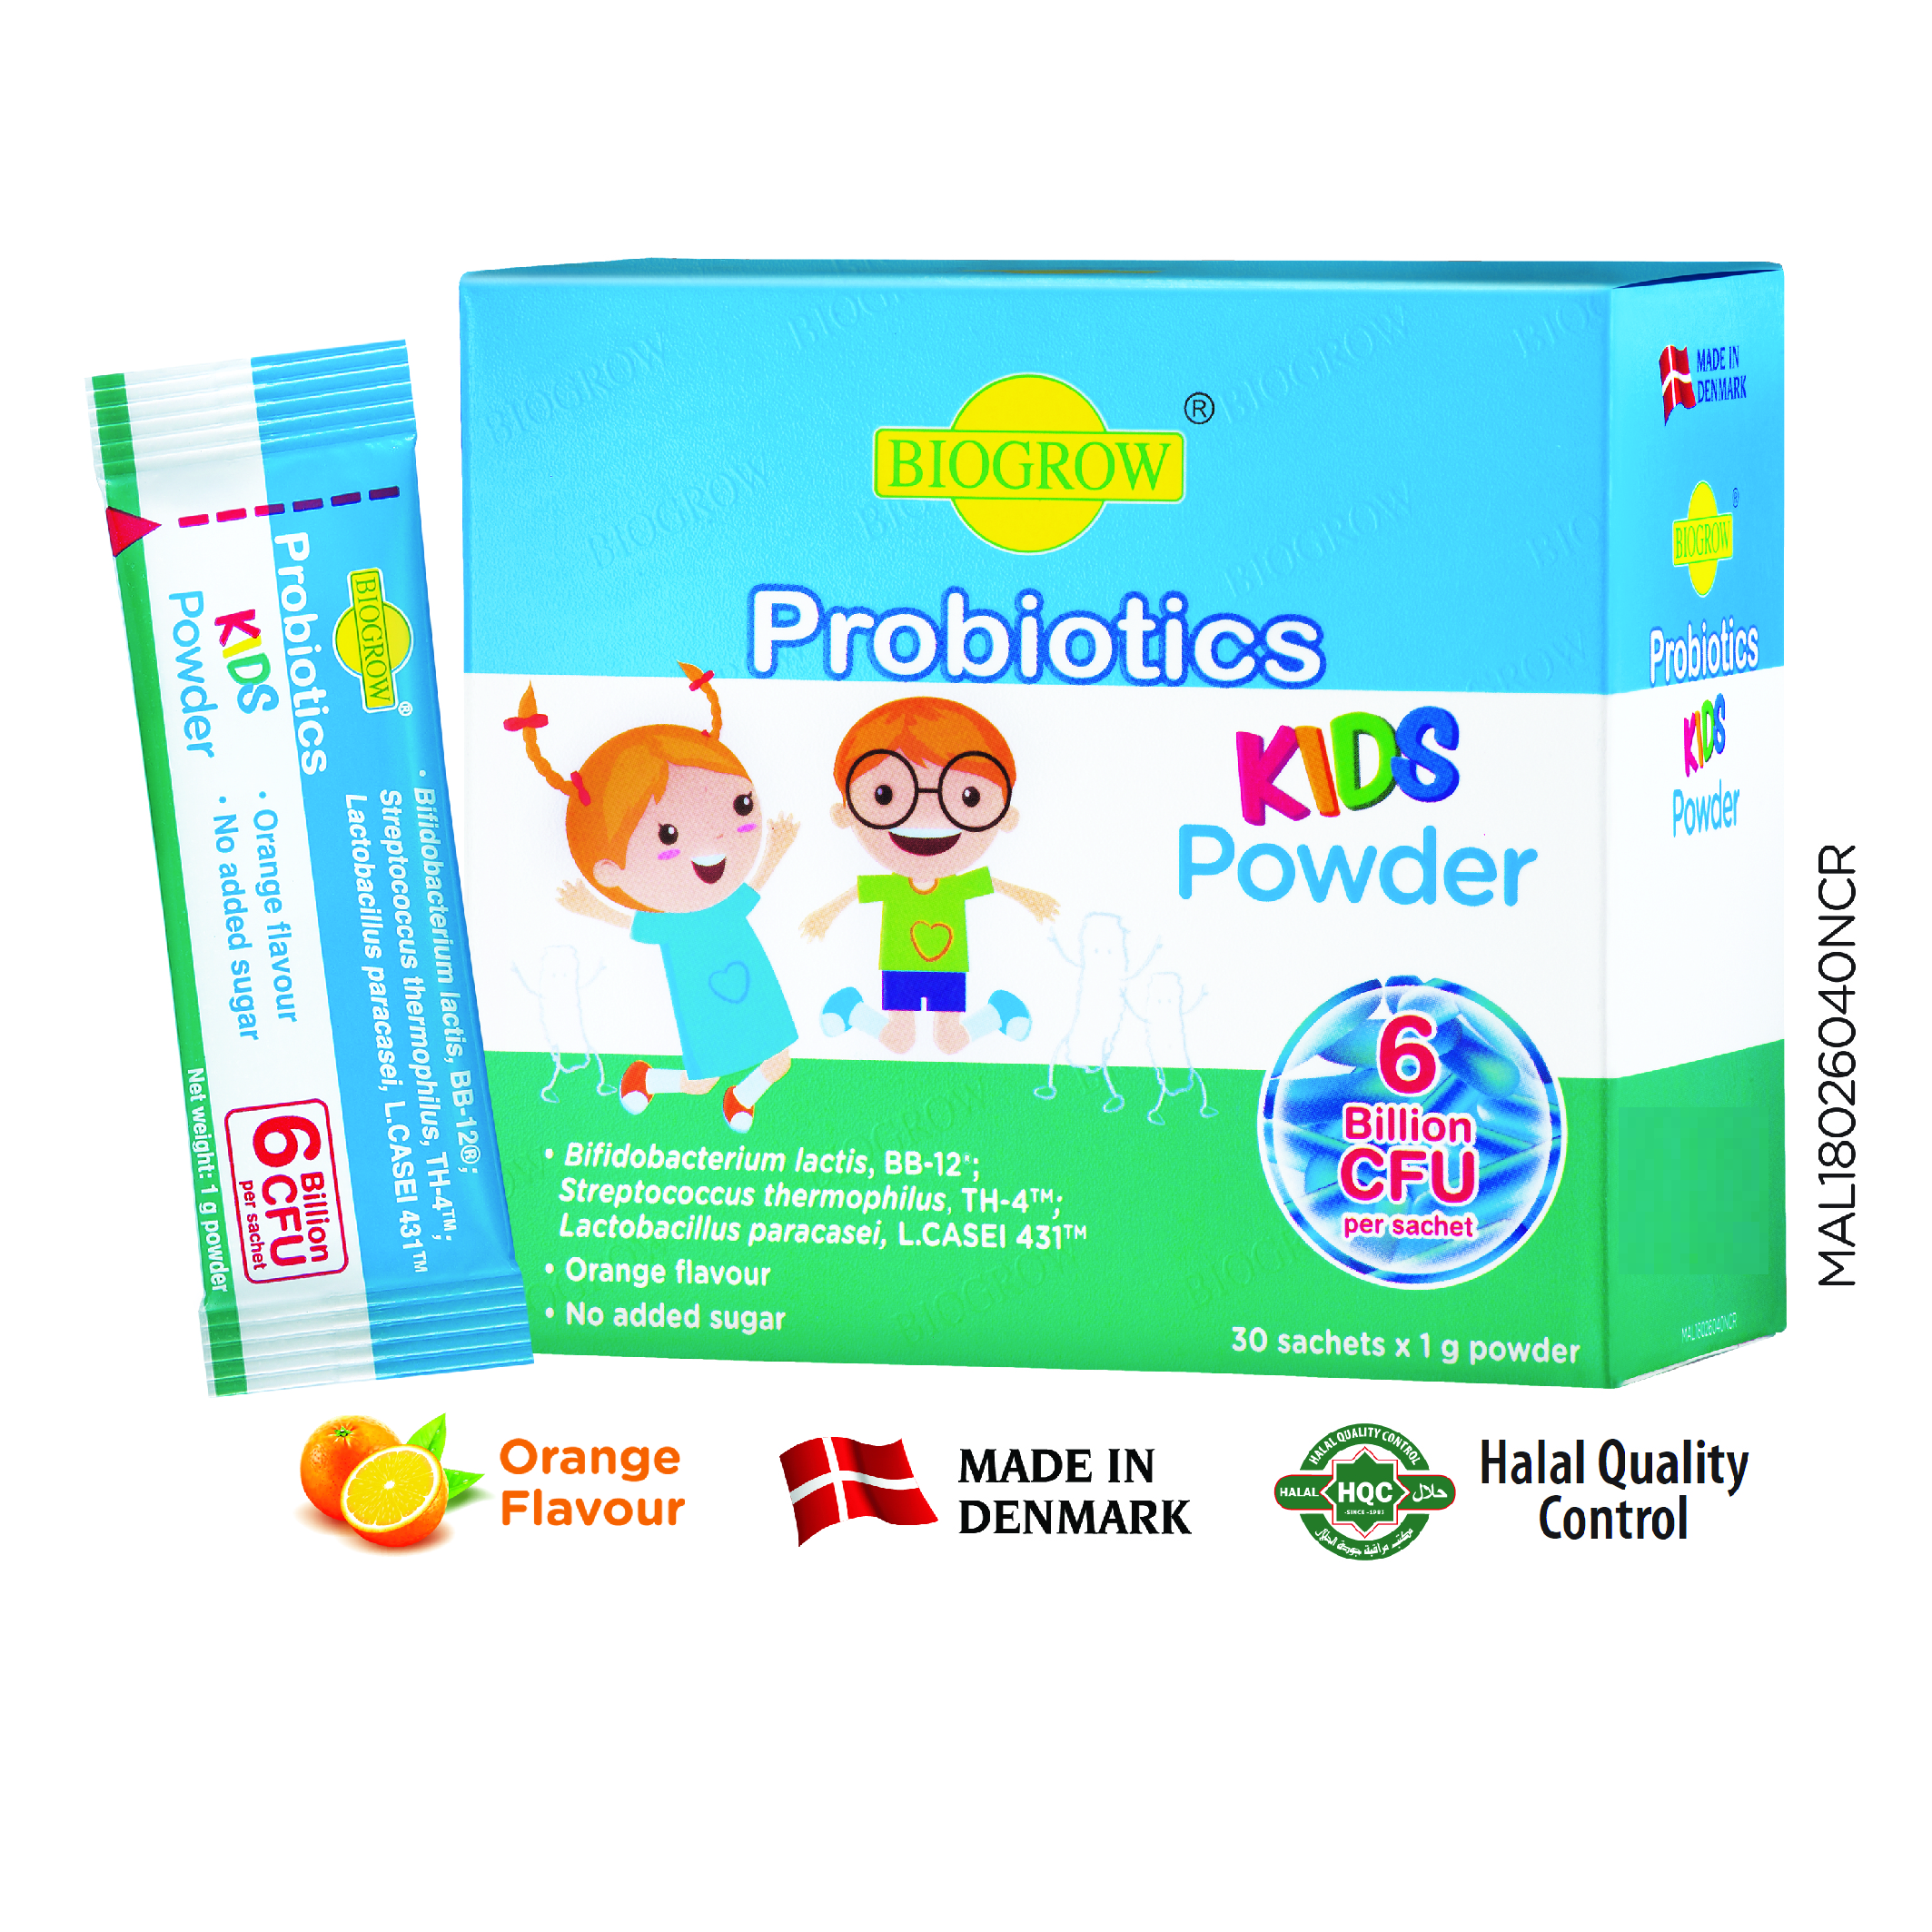 Biogrow-Probiotics-KIDS-Powder-1